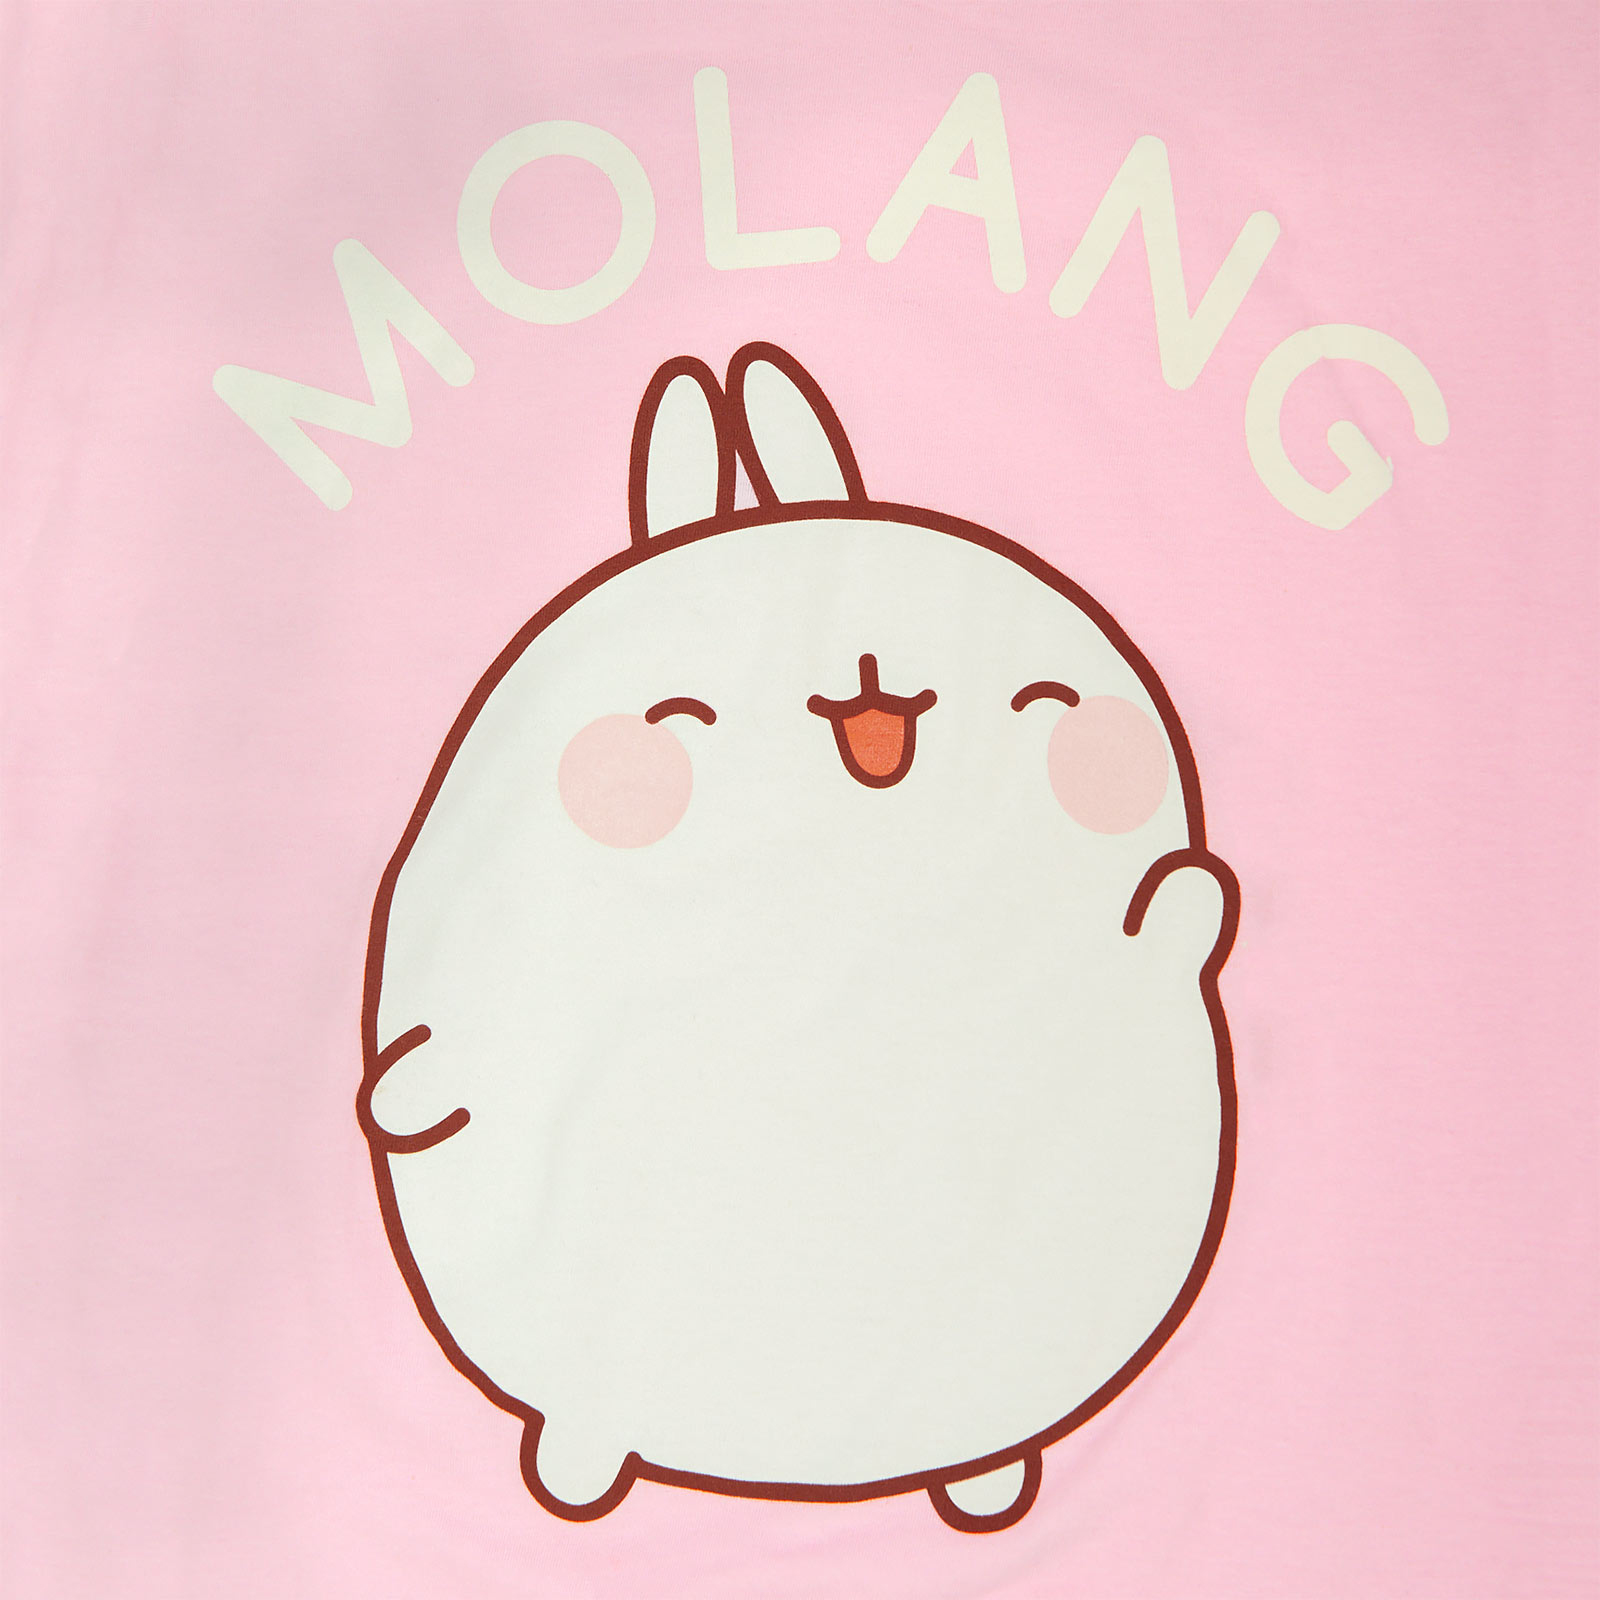 Molang - Happy T-Shirt Damen rosa